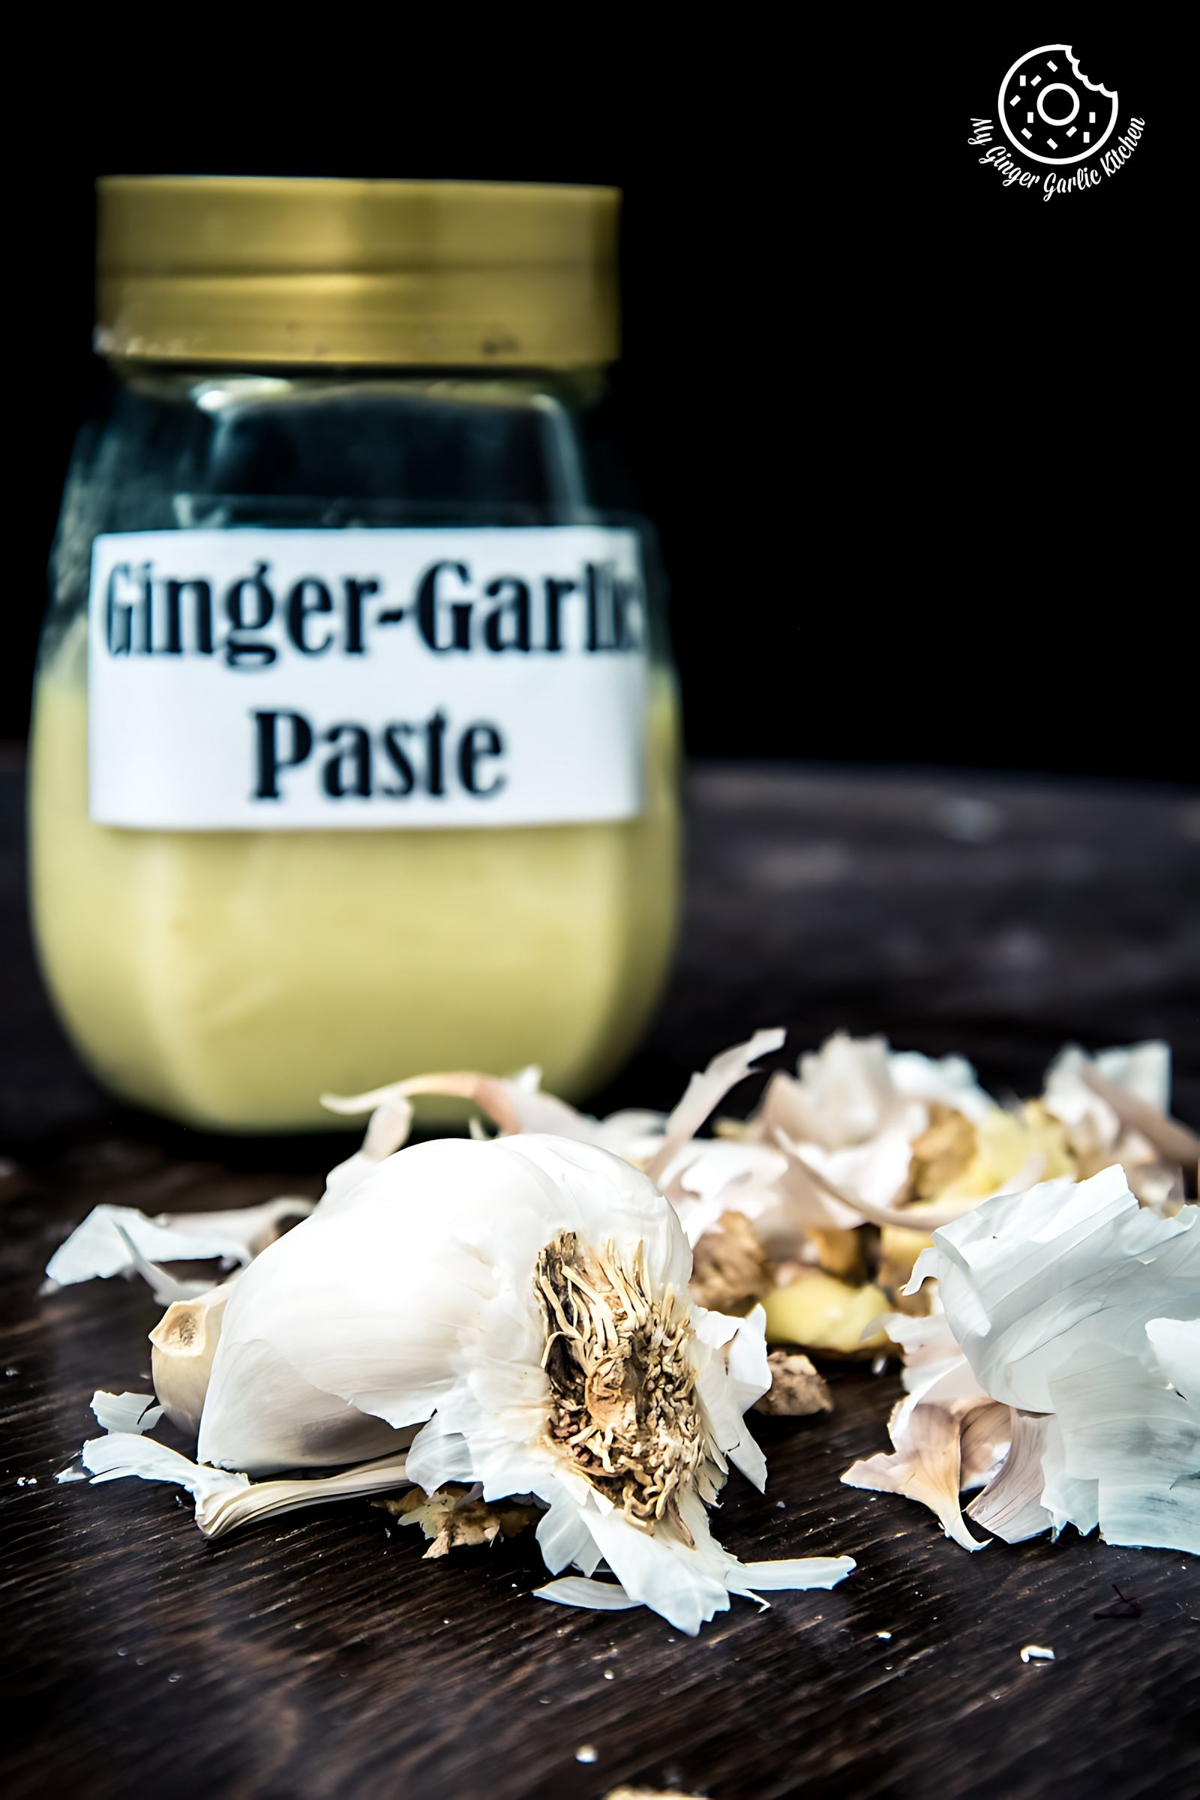 How to Make Garlic Paste